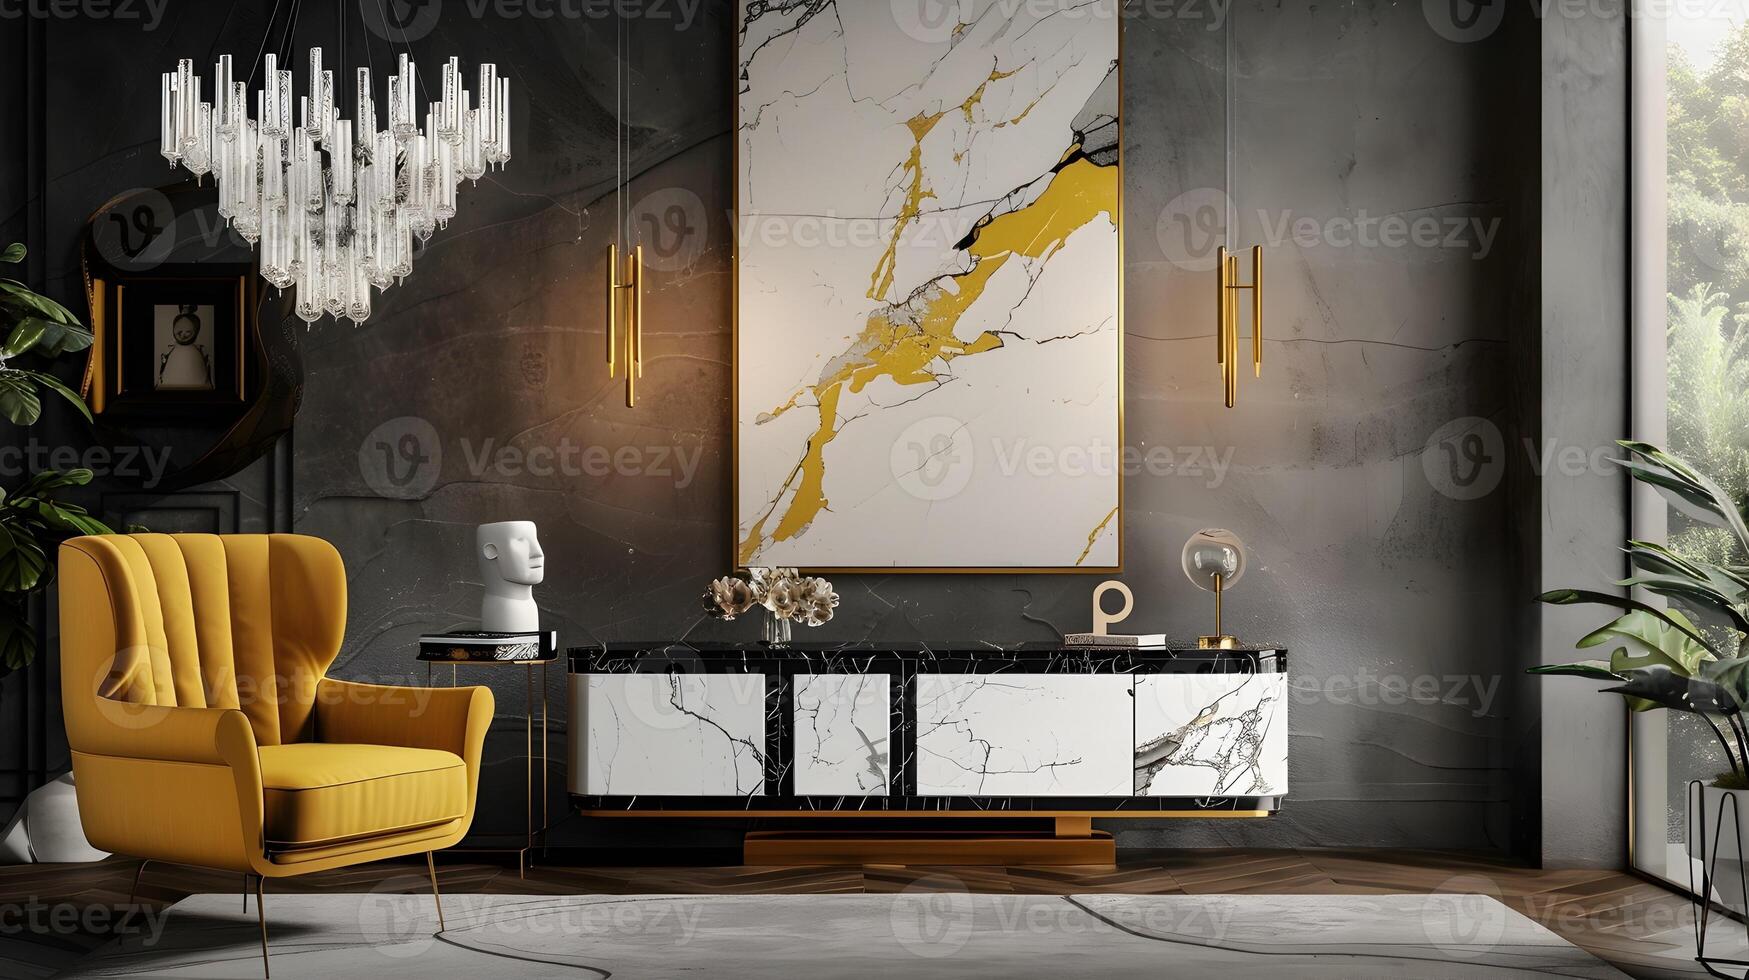 verbijsterend luxe interieur met elegant meubilair en strak decor foto